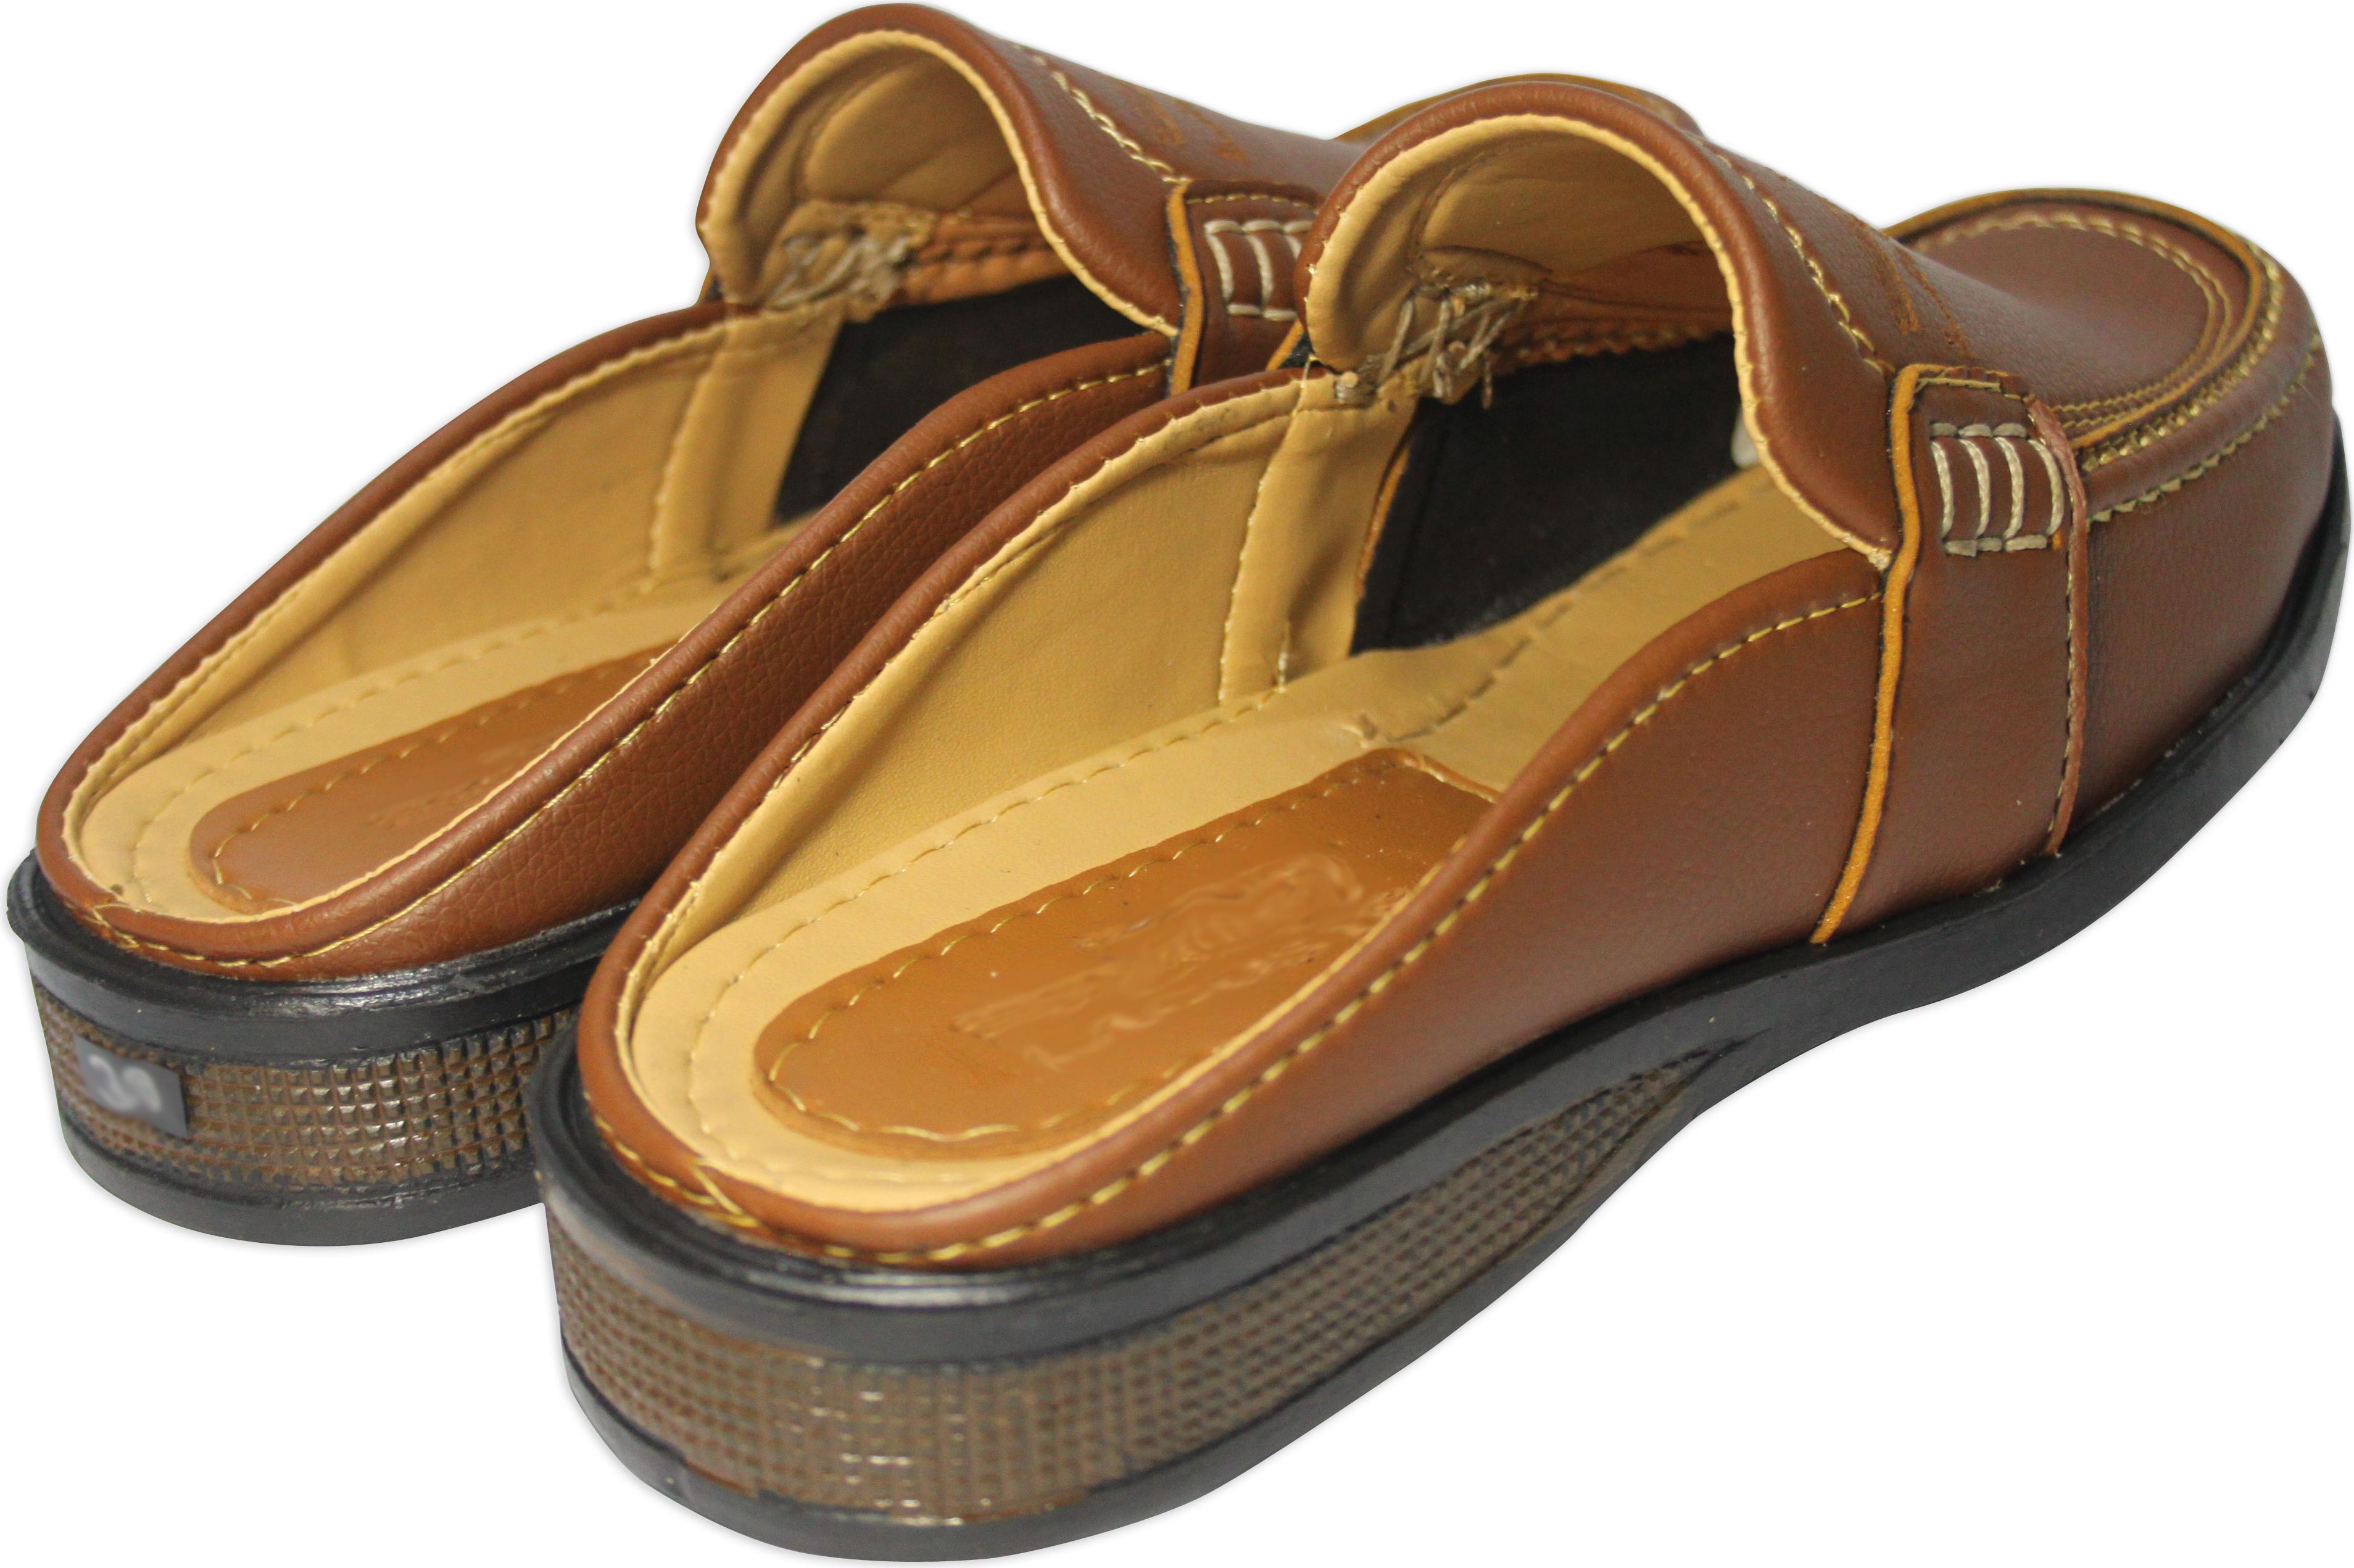 Thời trang dép giả giày cho nam - thoải mái nhưng không kém phần lịch lãm NKV-SAPO-02-3oo-NA (Nâu bò